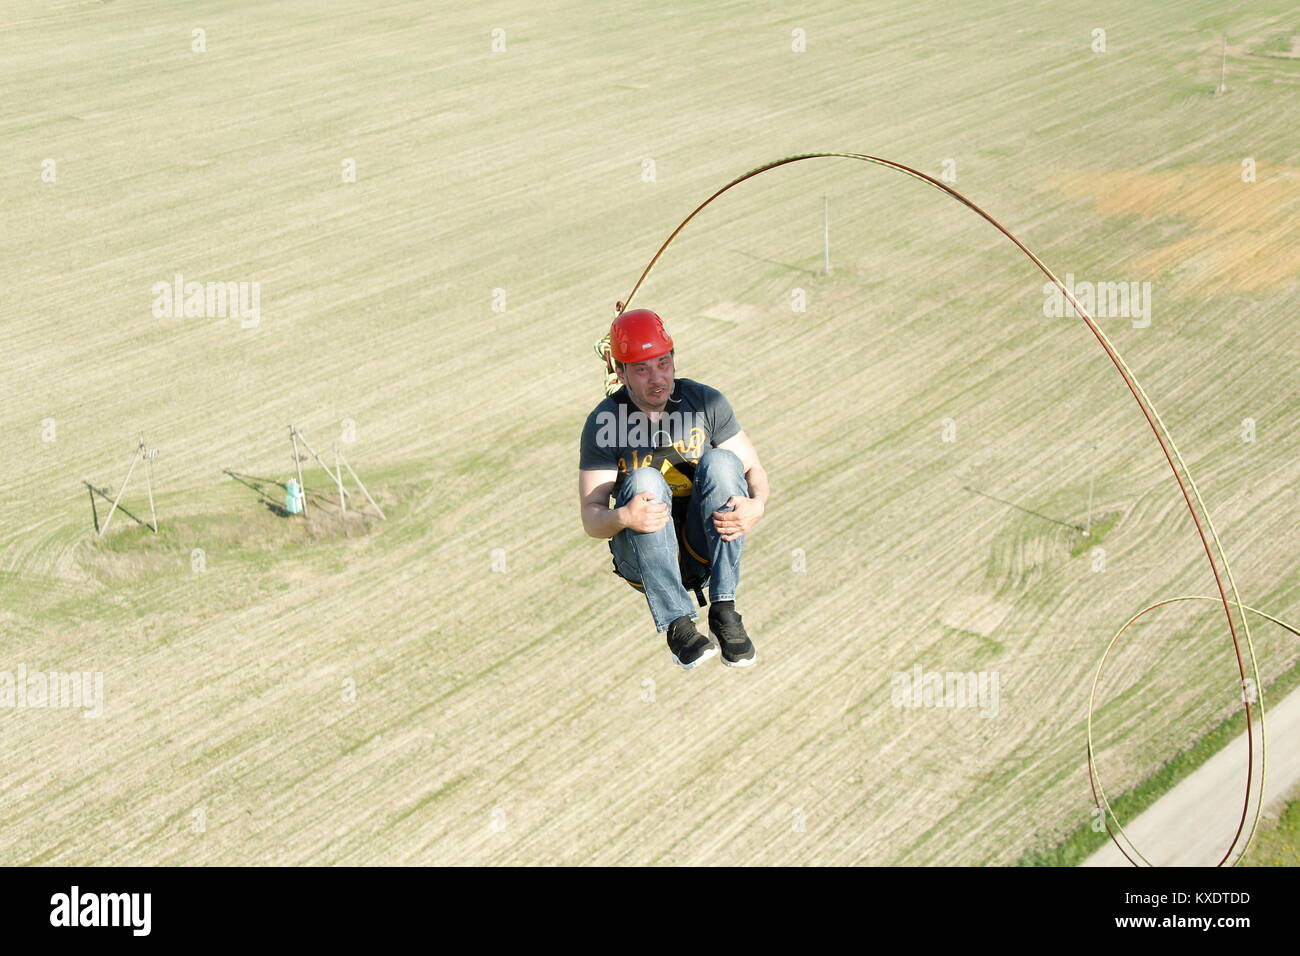 Belarus, Gomel, Mai 06, 2017 mit einem Seil springen. Extreme Menschen springen aus einer großen Höhe. Springen mit Seil. Flug nach unten auf das Seil. engagieren sich im ropejump Stockfoto